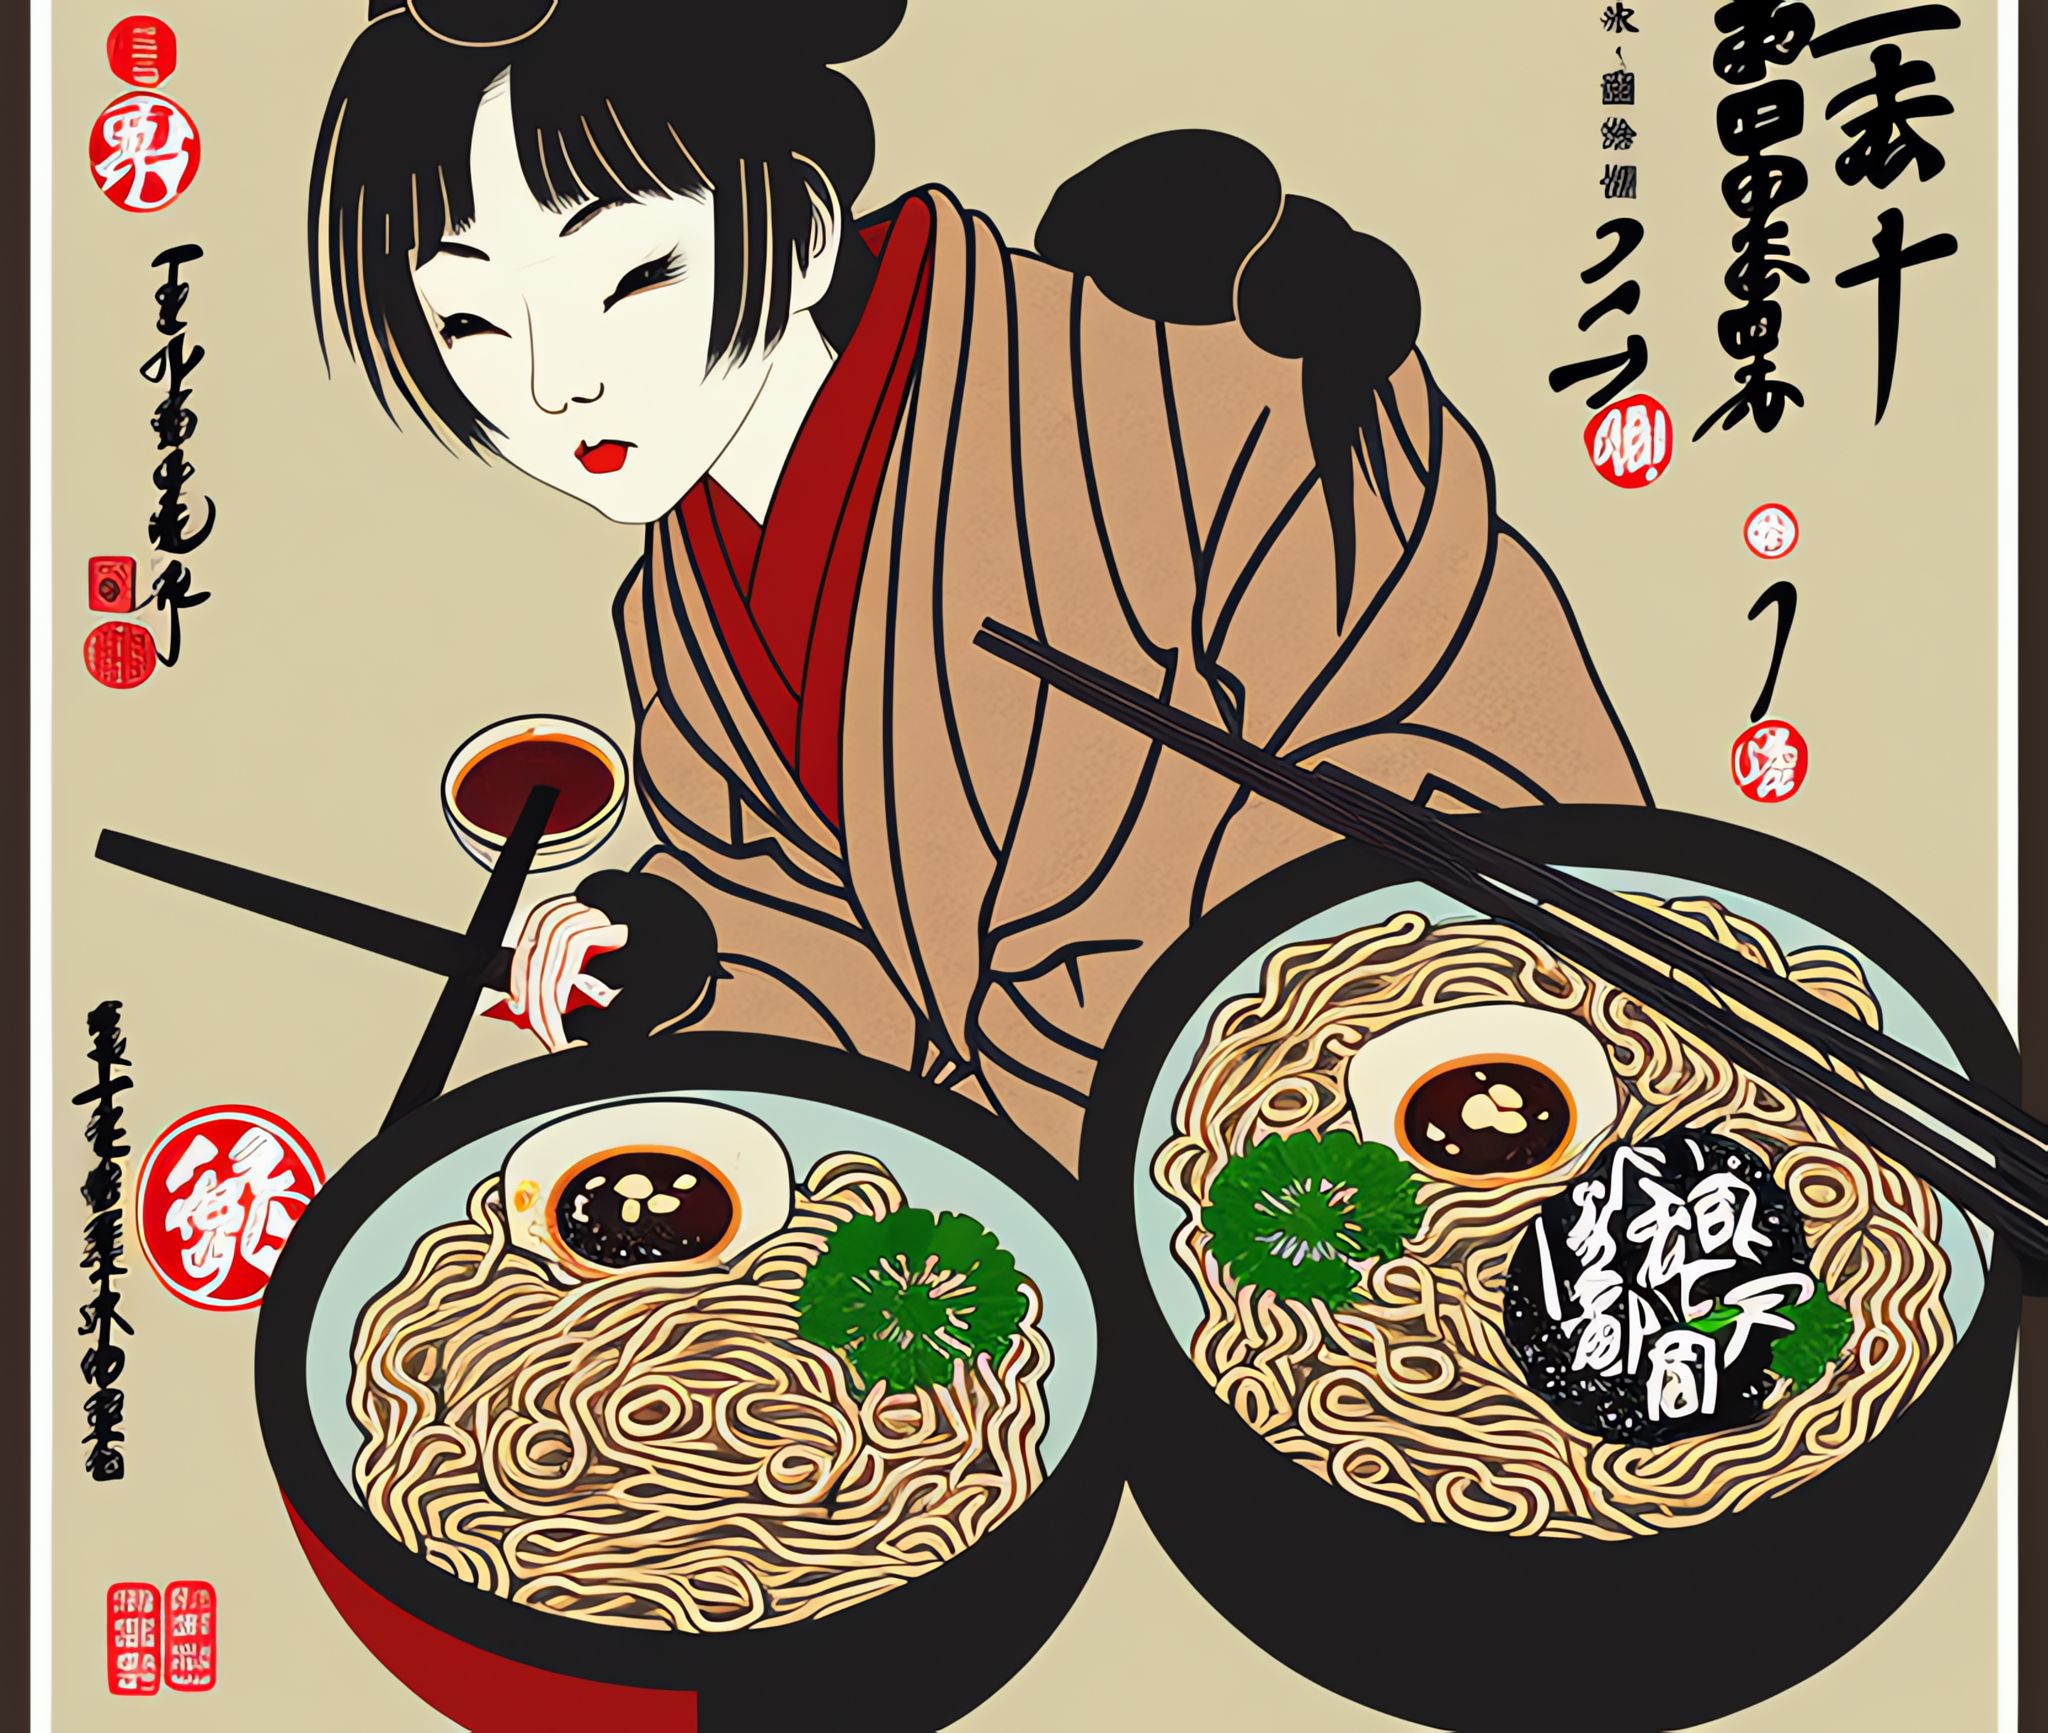 Ramen-restaurant-Japanese-girl-art-work-Japanese-food-delicious-restaurant-poster-vintage-r-s69m